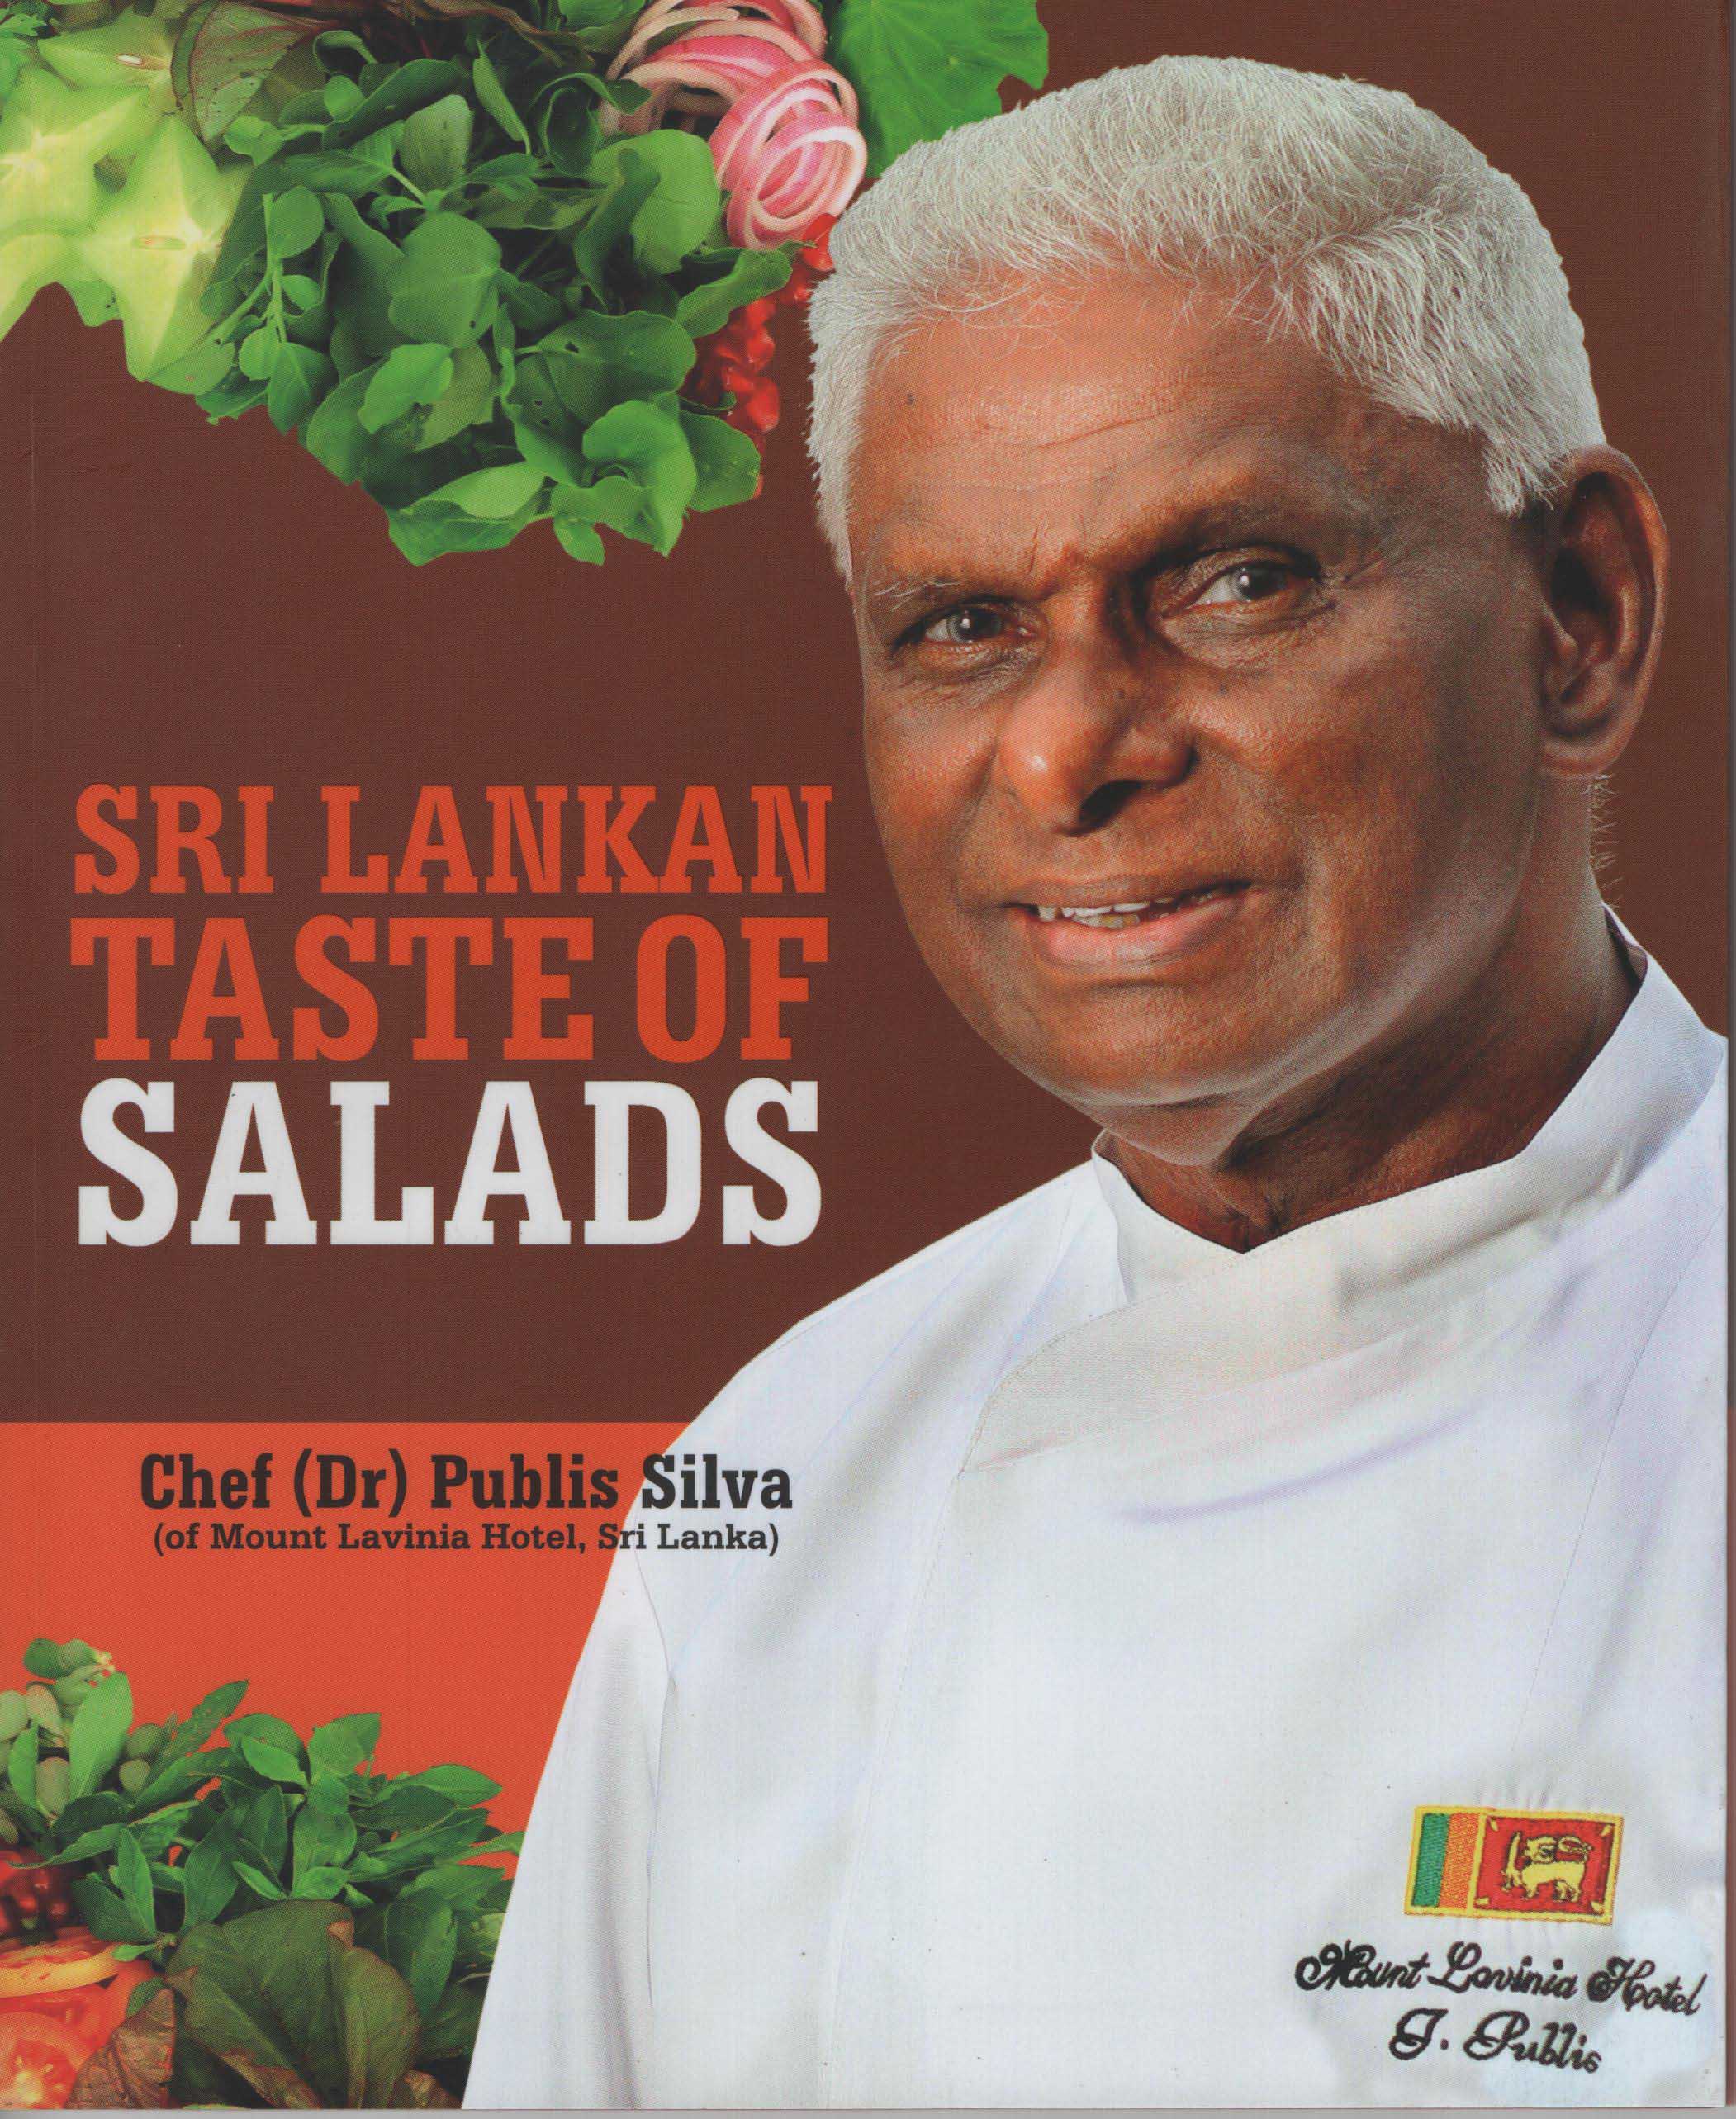 Sri Lankan Taste of Salads